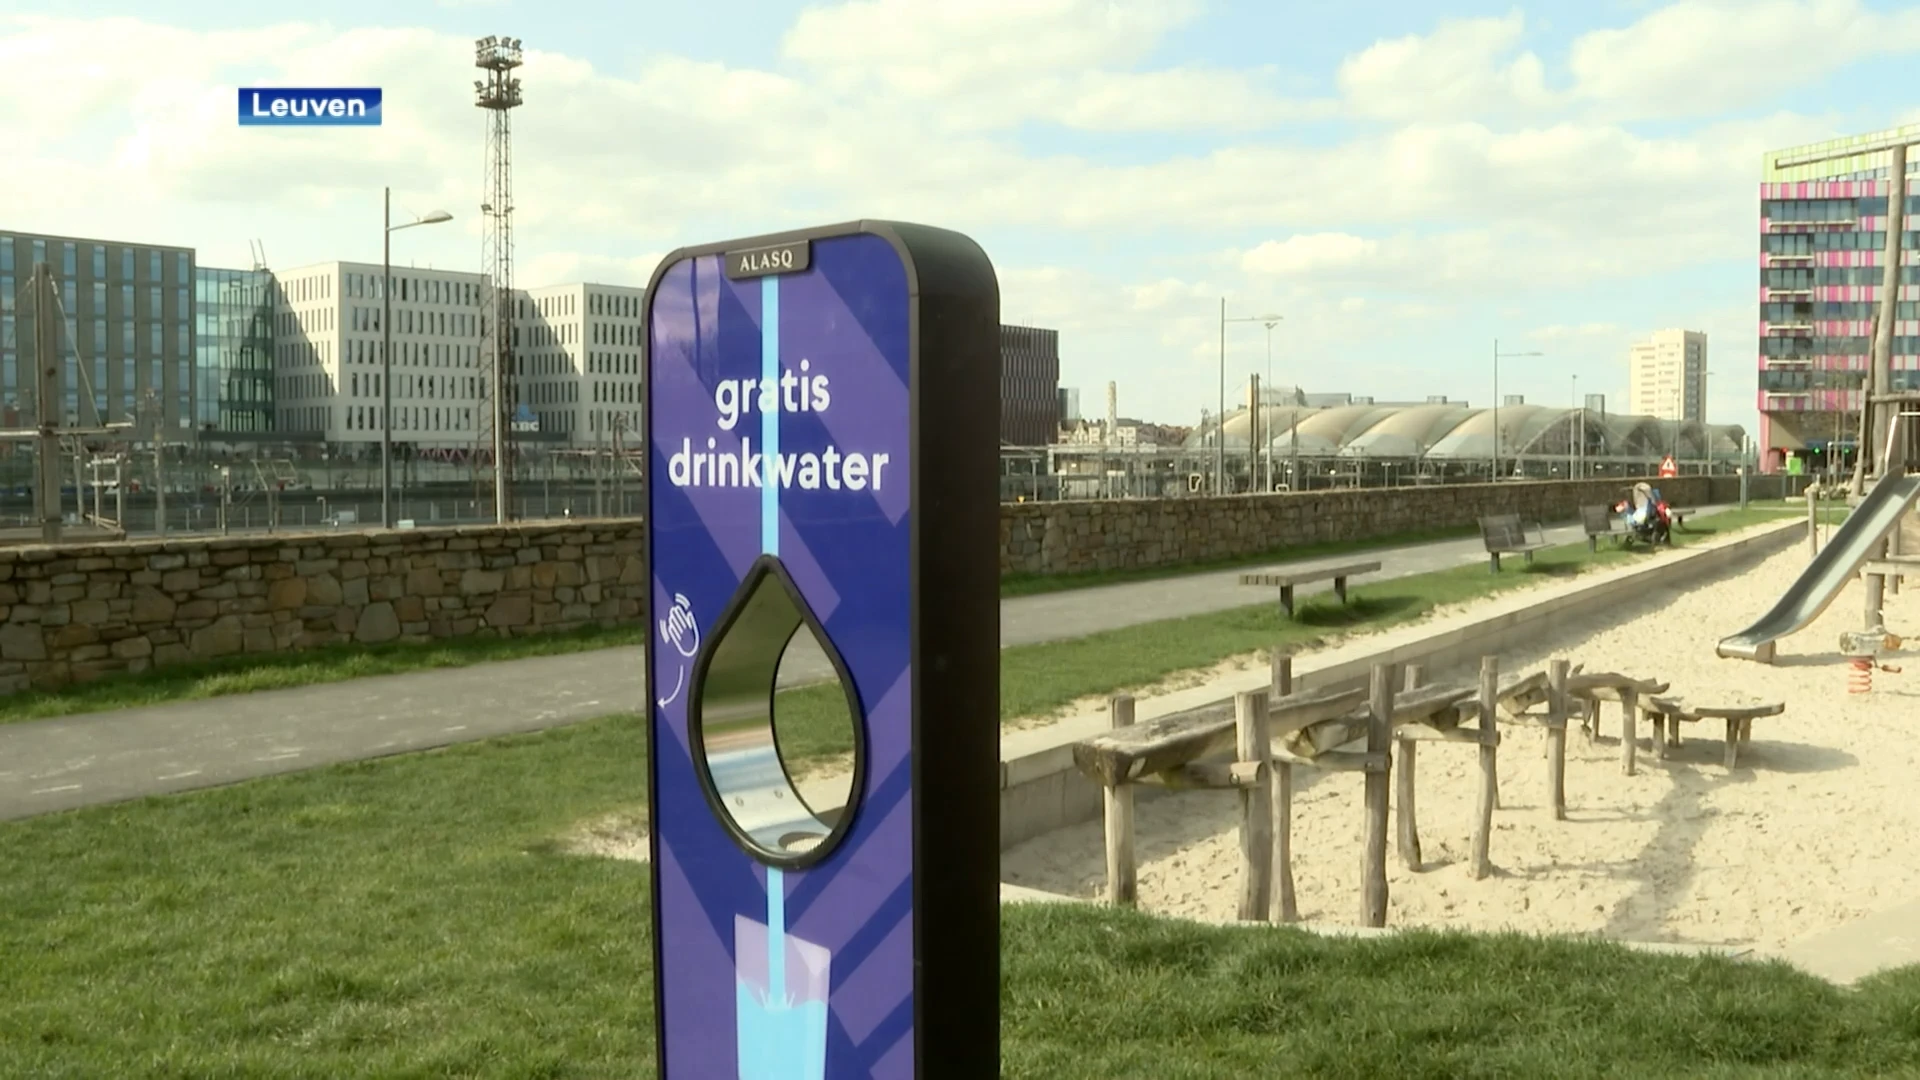 Zeven gratis kraanwaterpunten in Leuven: "Was al lang vraag naar"